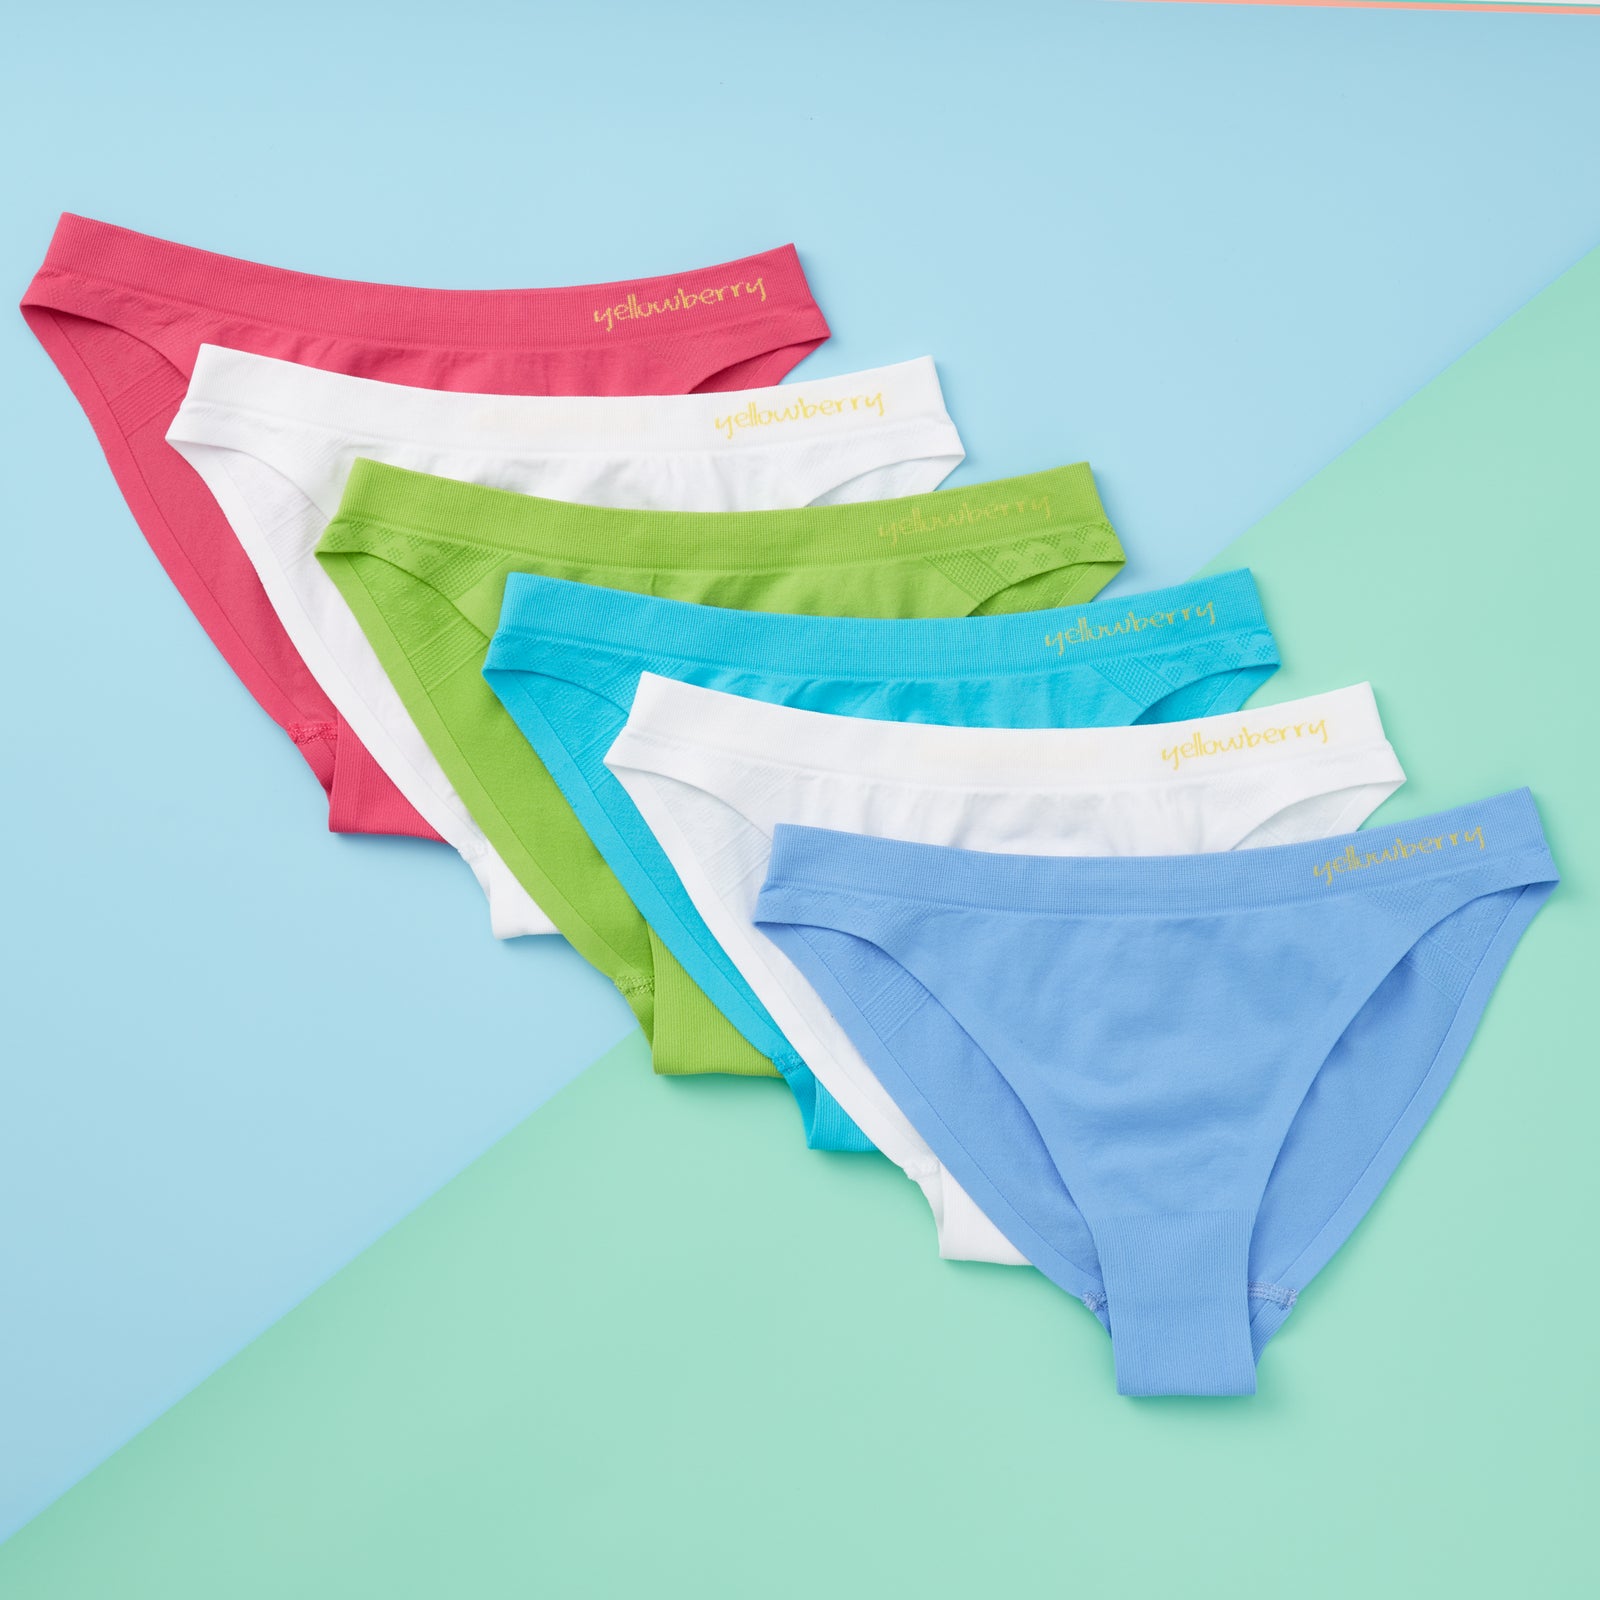 Prime Deals Today Only Womens Cotton Underwear Joyspun Underwear